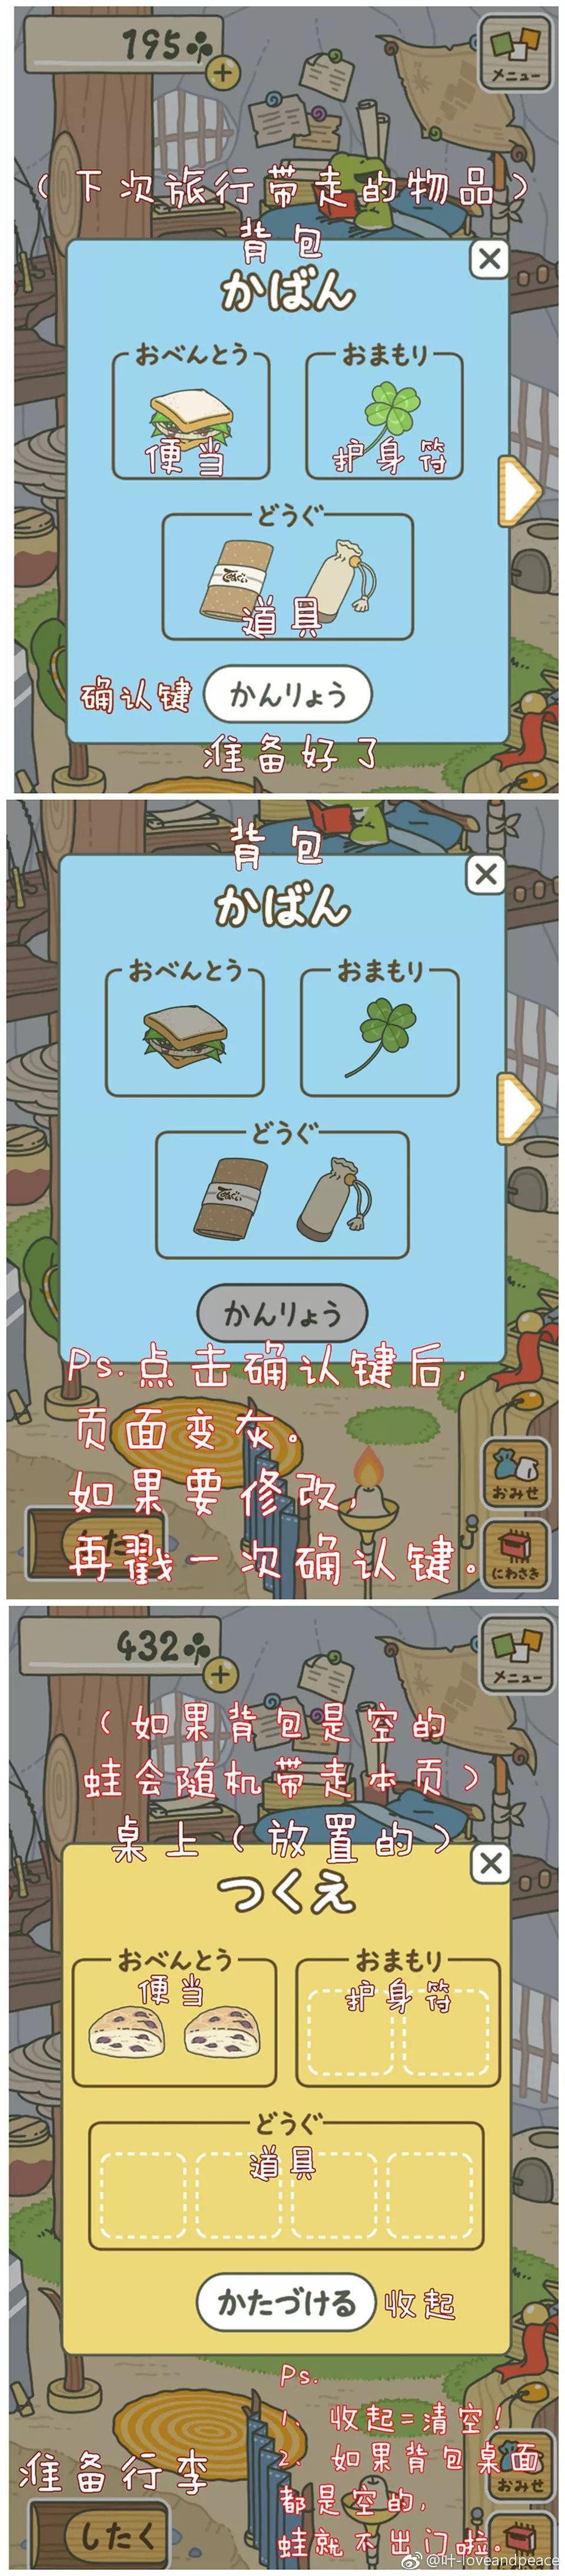 旅行青蛙新手玩法攻略 全中文汉化版翻译！